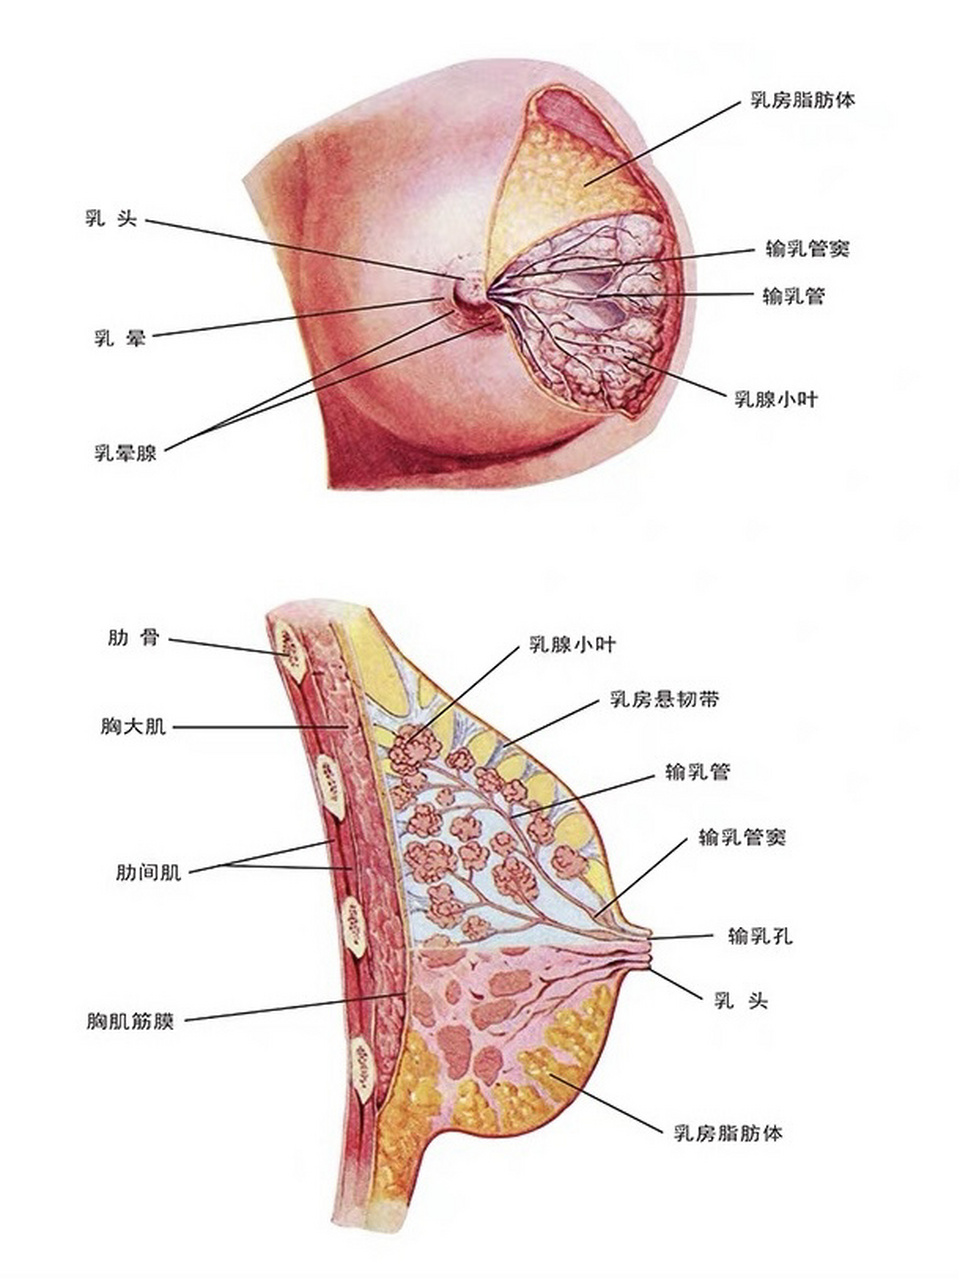 乳房乳腺的生理结构 乳腺是皮肤的附属腺,为复管泡状腺